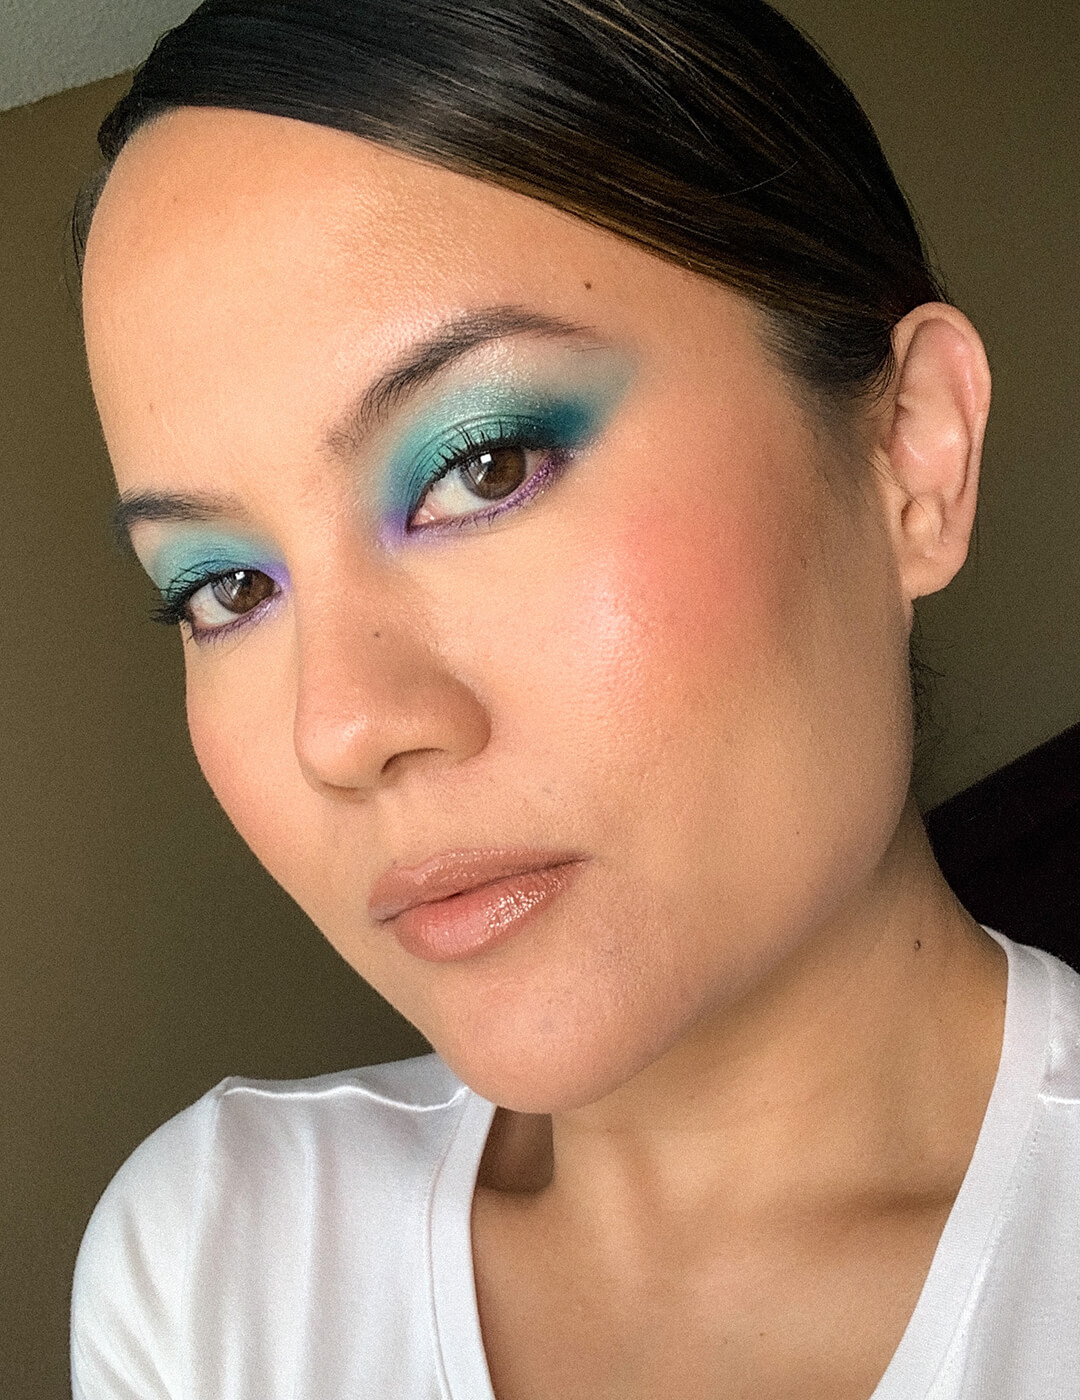 makeup ib @emerald_alicemakeup #pridemakeup